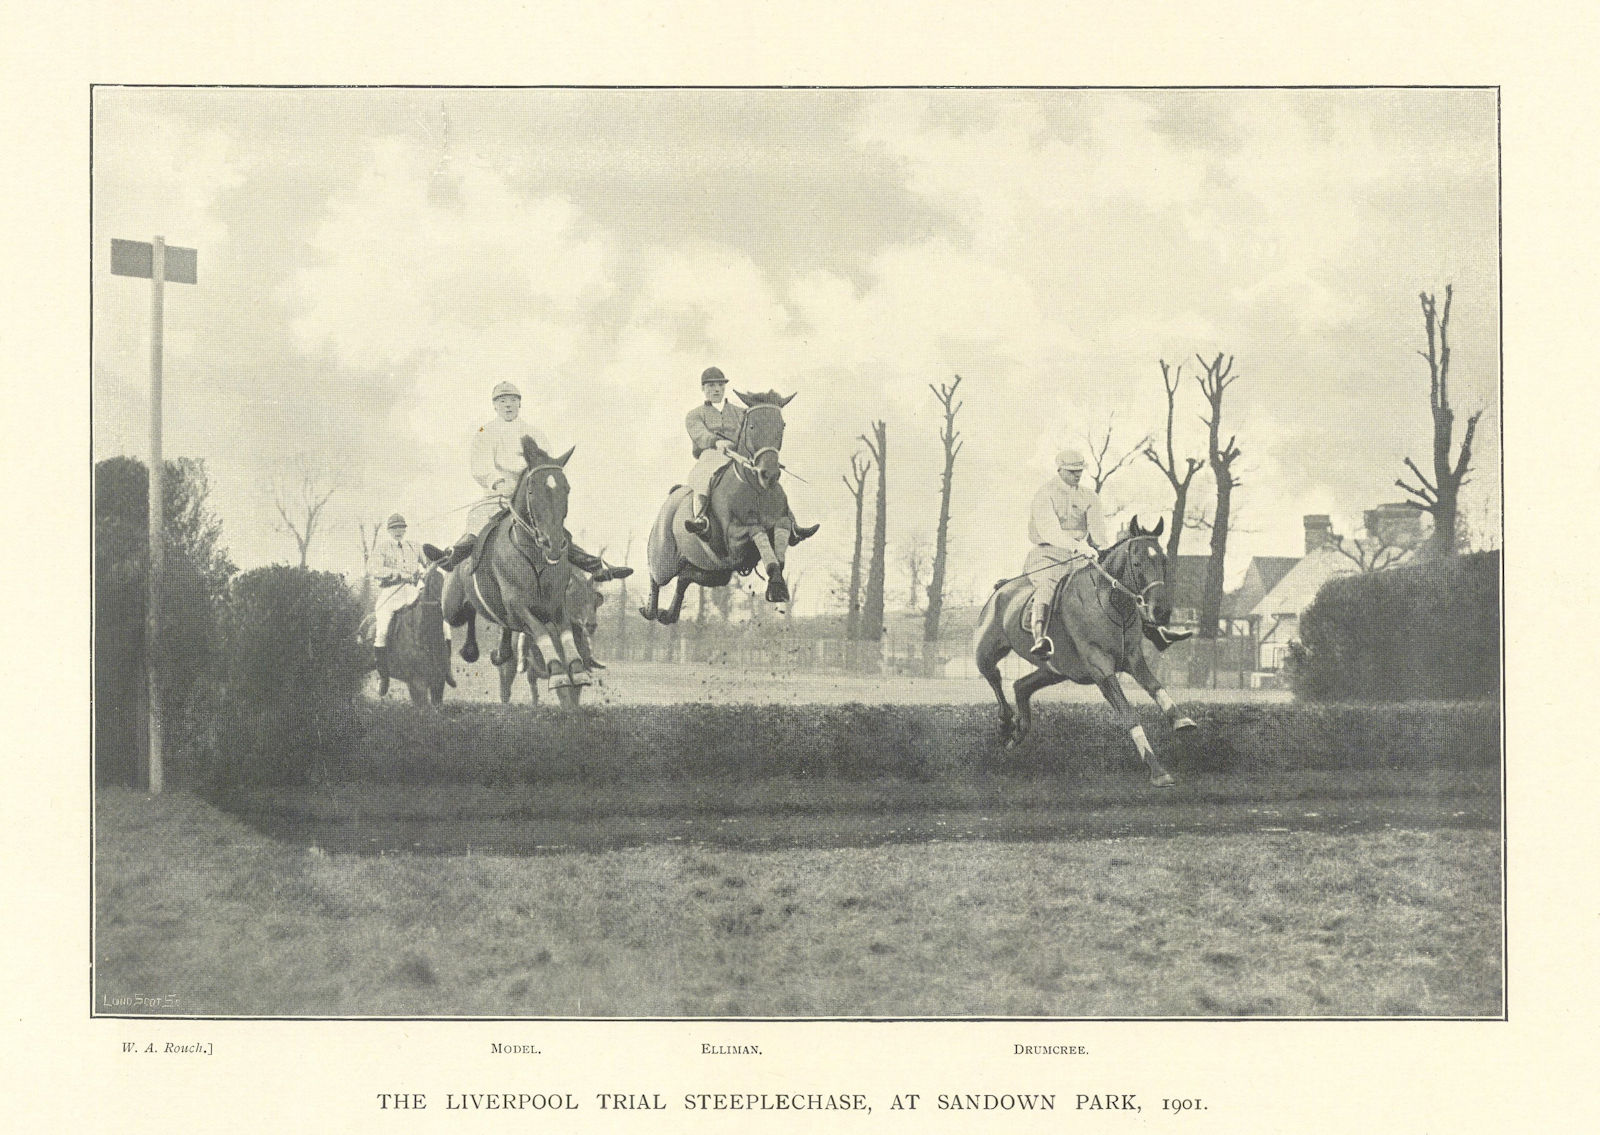 Liverpool Trial Steeplechase at Sandown Park, 1901. Model Elliman Drumcree 1903